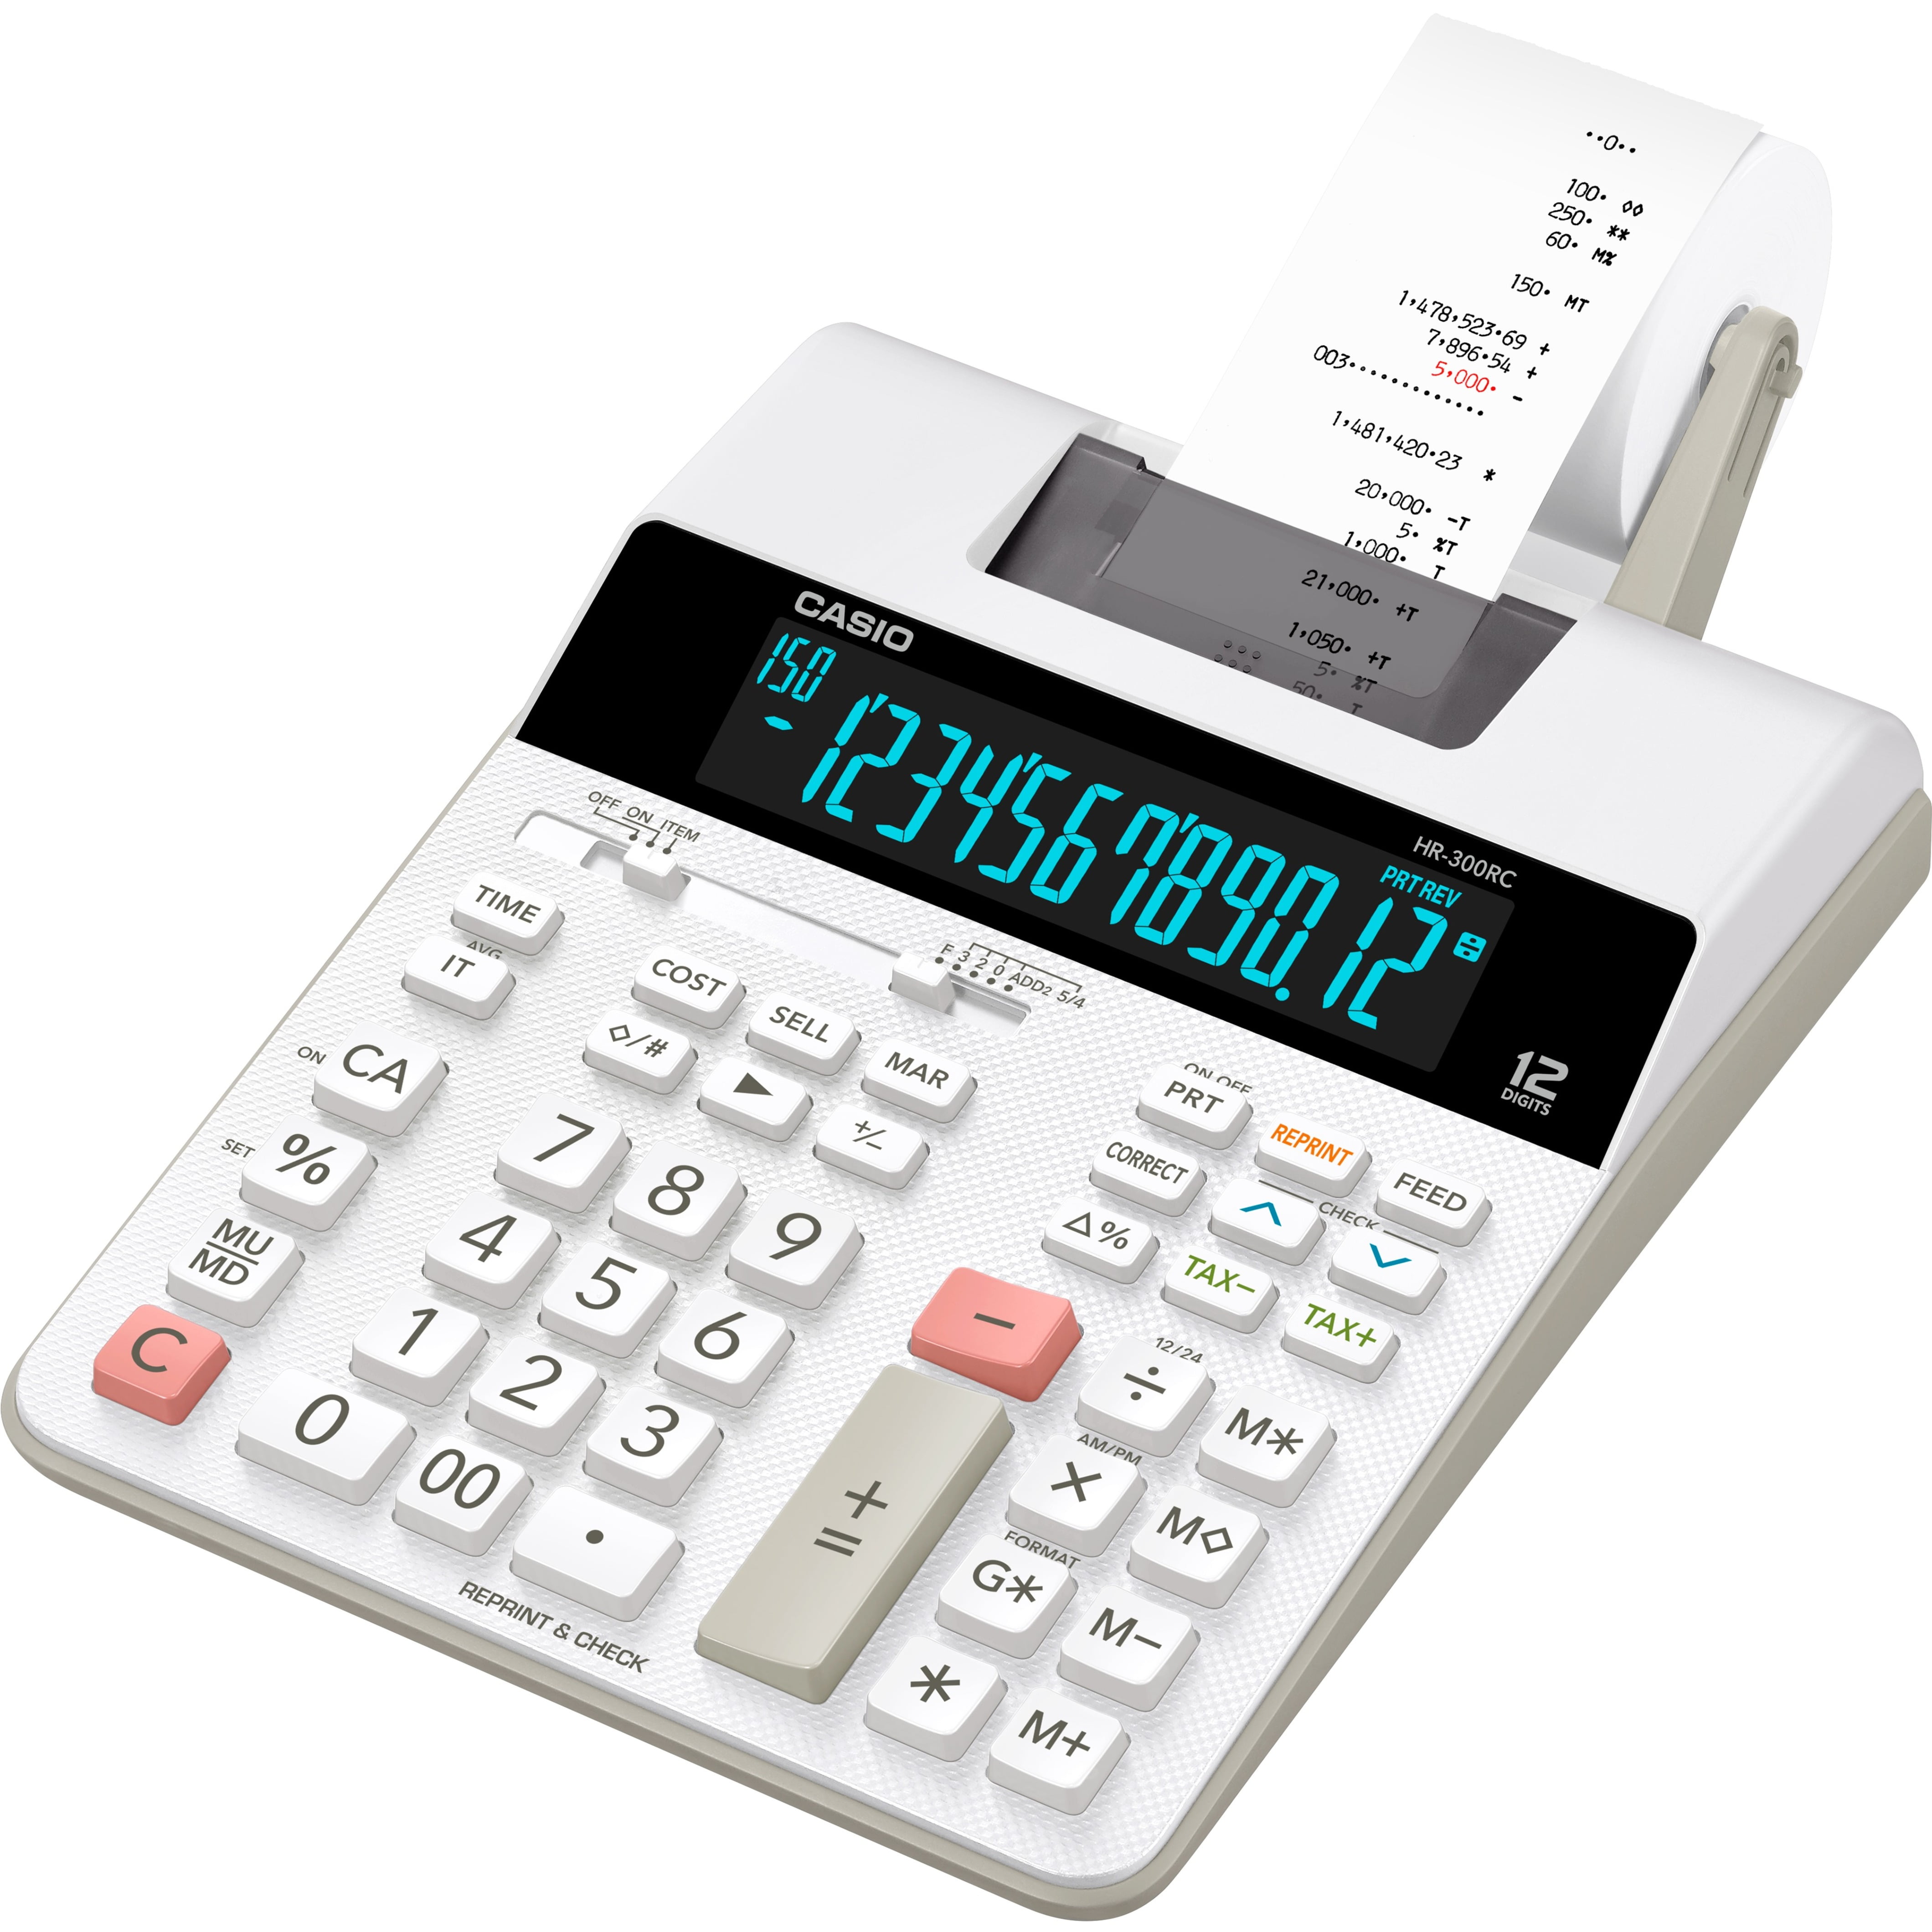 Sharp EL1750V Printing Calculator for sale online 